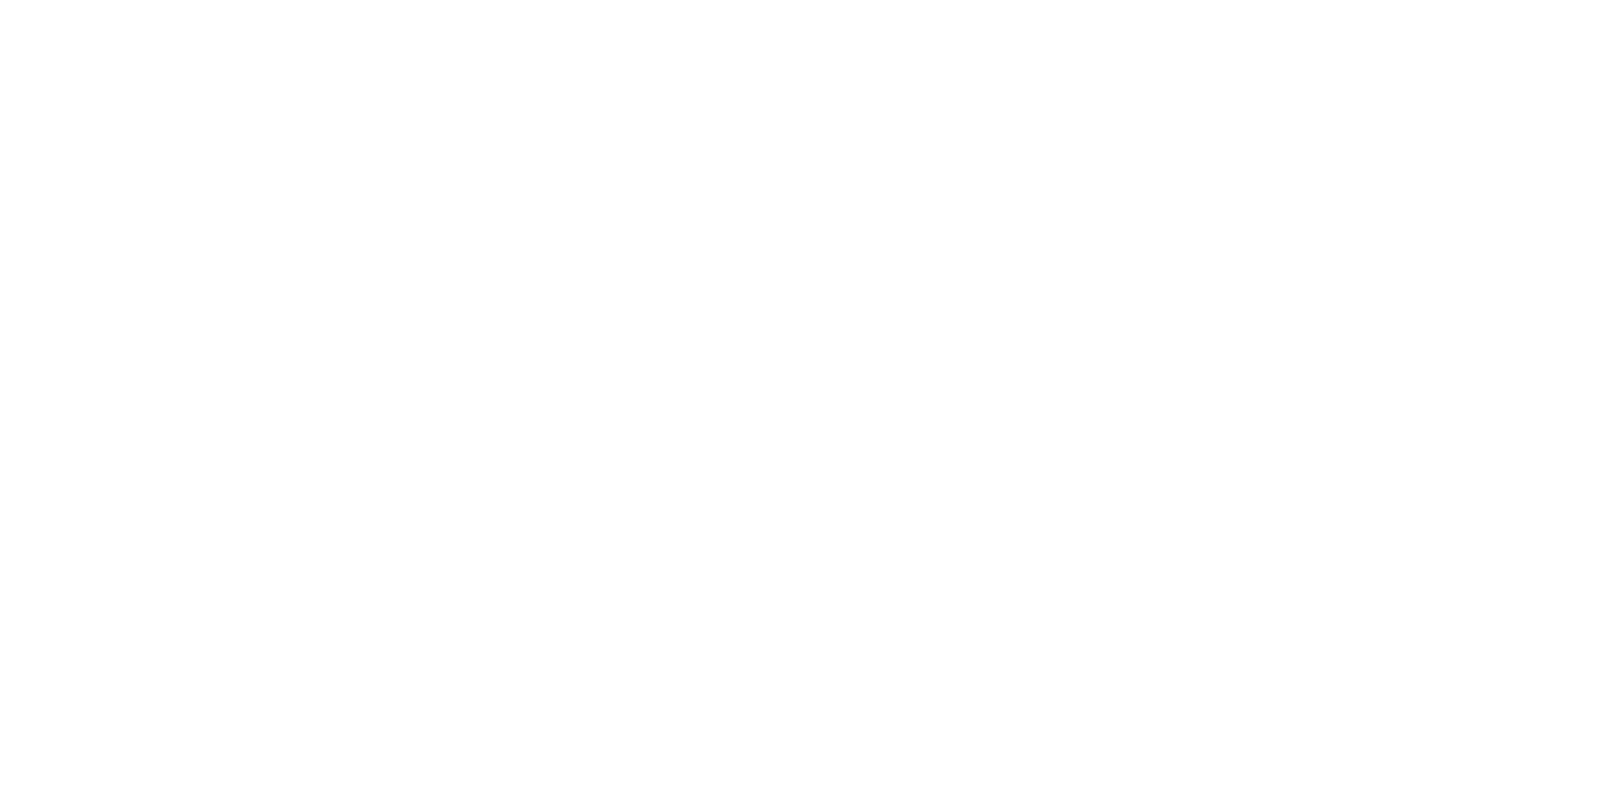 The Legends of Elysium